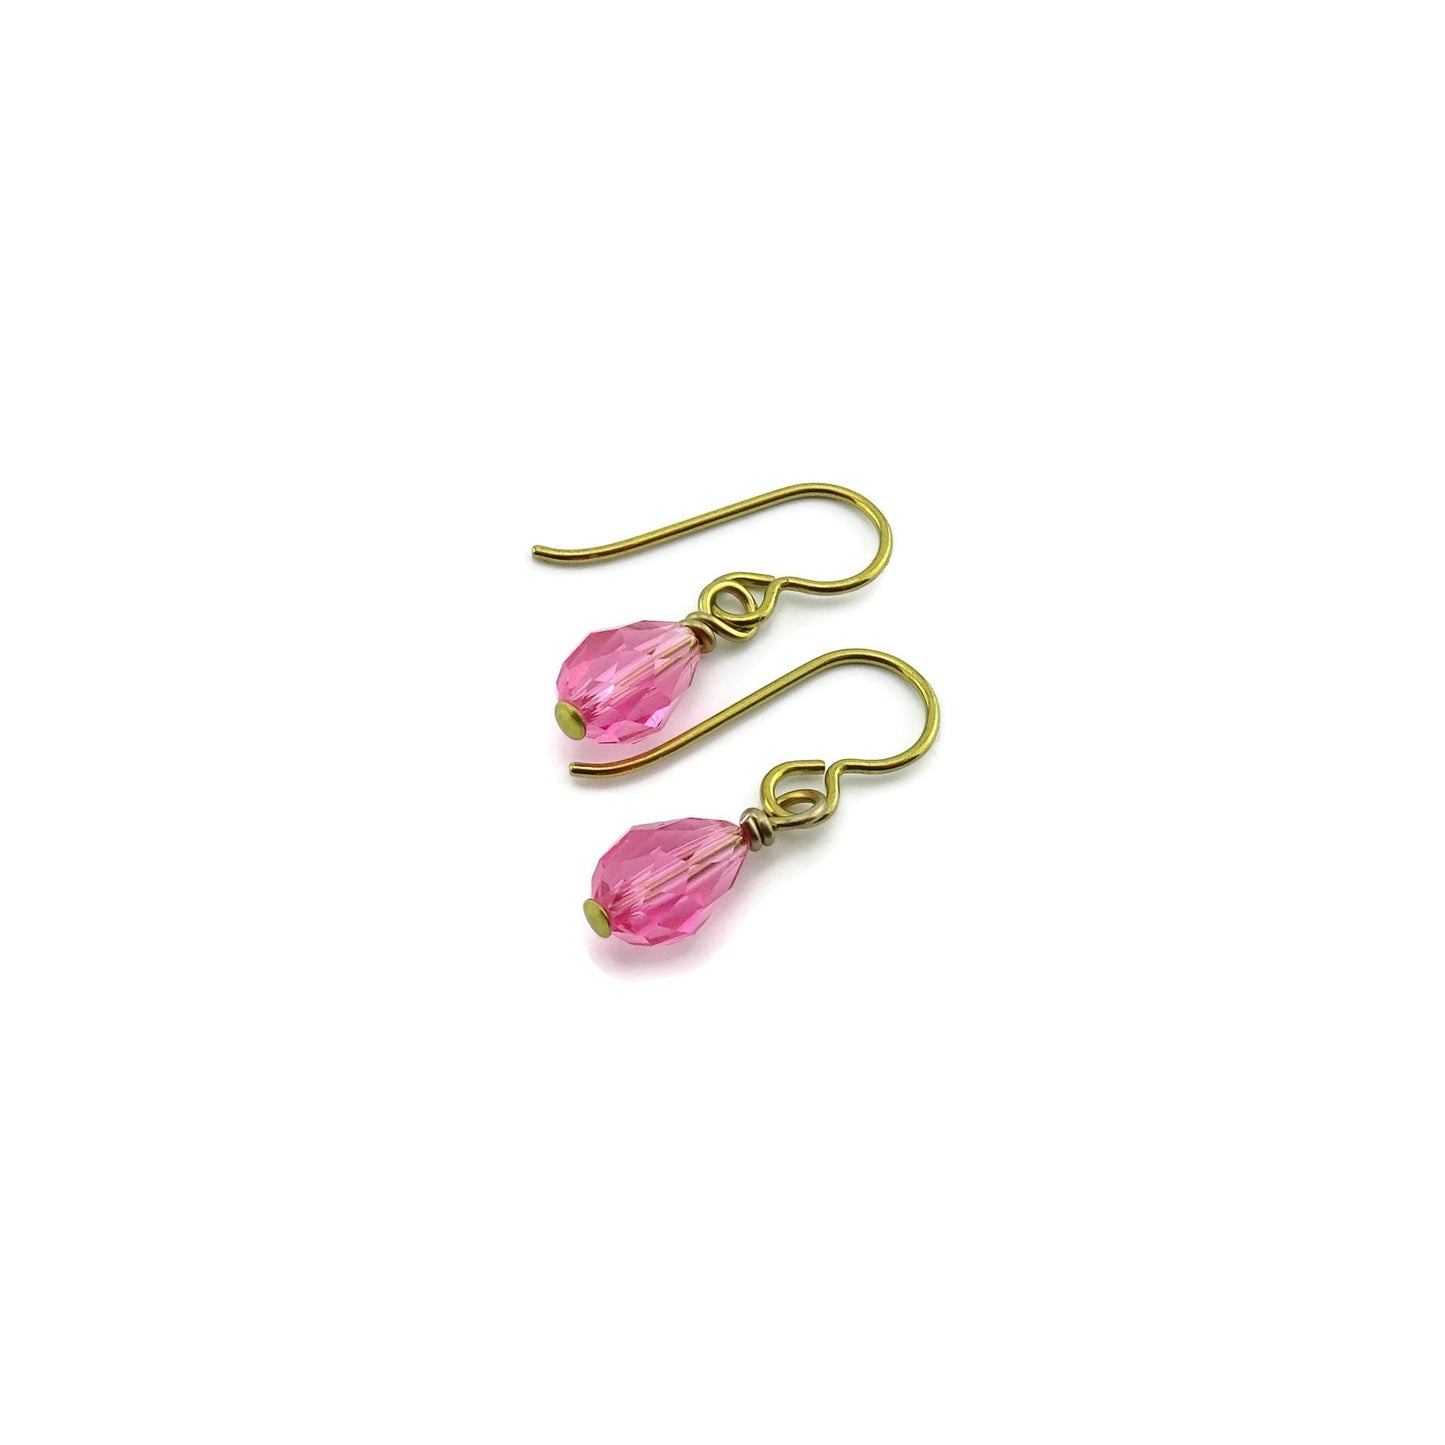 Pink Crystal Drop Gold Niobium Earrings, Rose Swarovski Crystal Teardrop Earrings, Hypoallergenic Earrings, Non Allergic Nickel Free Jewelry